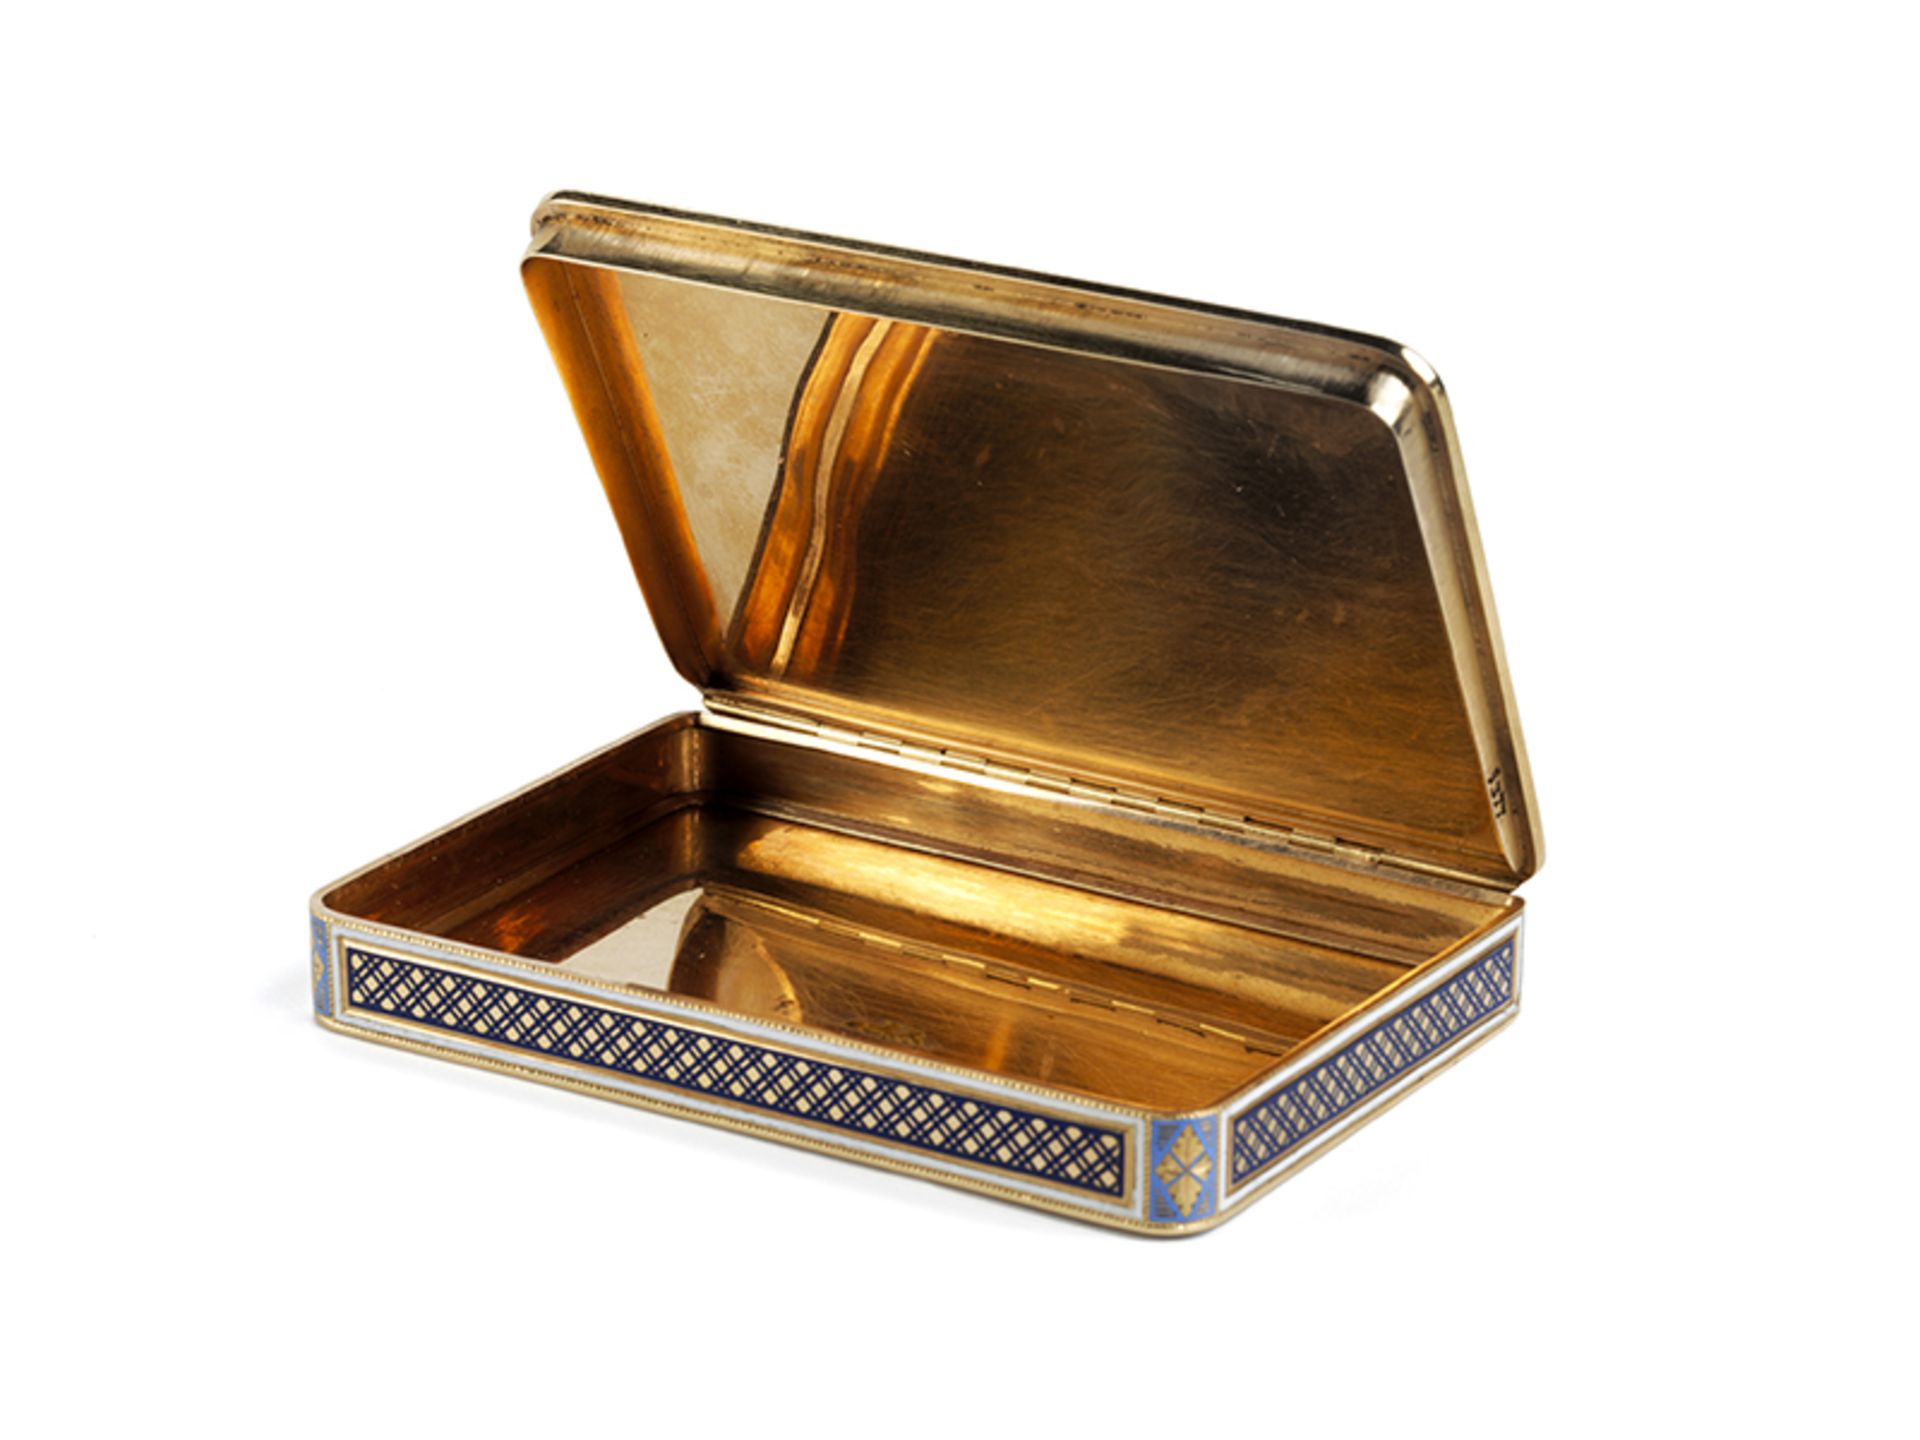 Schweizer Golddose 1,3 x 9,4 x 6,4 cm. Gewicht: 126 g. Inwandig punziert mit Feingehaltsstempel - Bild 3 aus 6